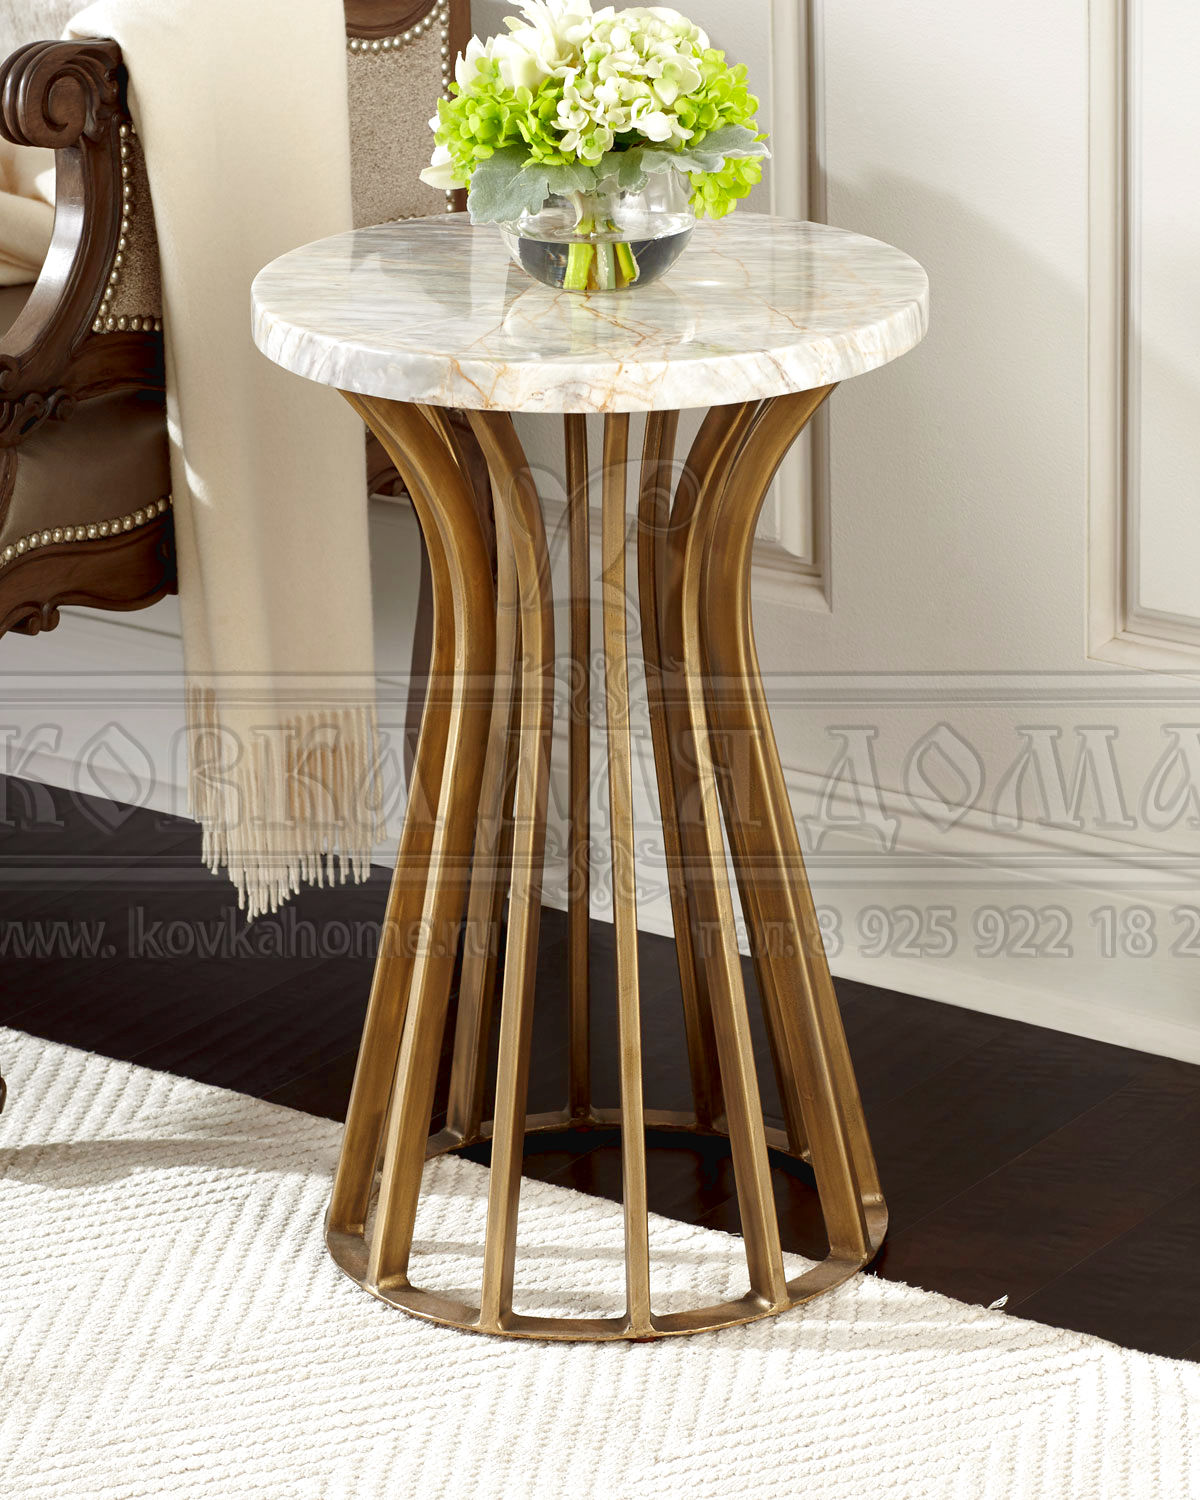 Столик дизайнерский в современном стиле с мраморной или стеклянной столешницей: Размер на фото 760(H)х400(D)мм.